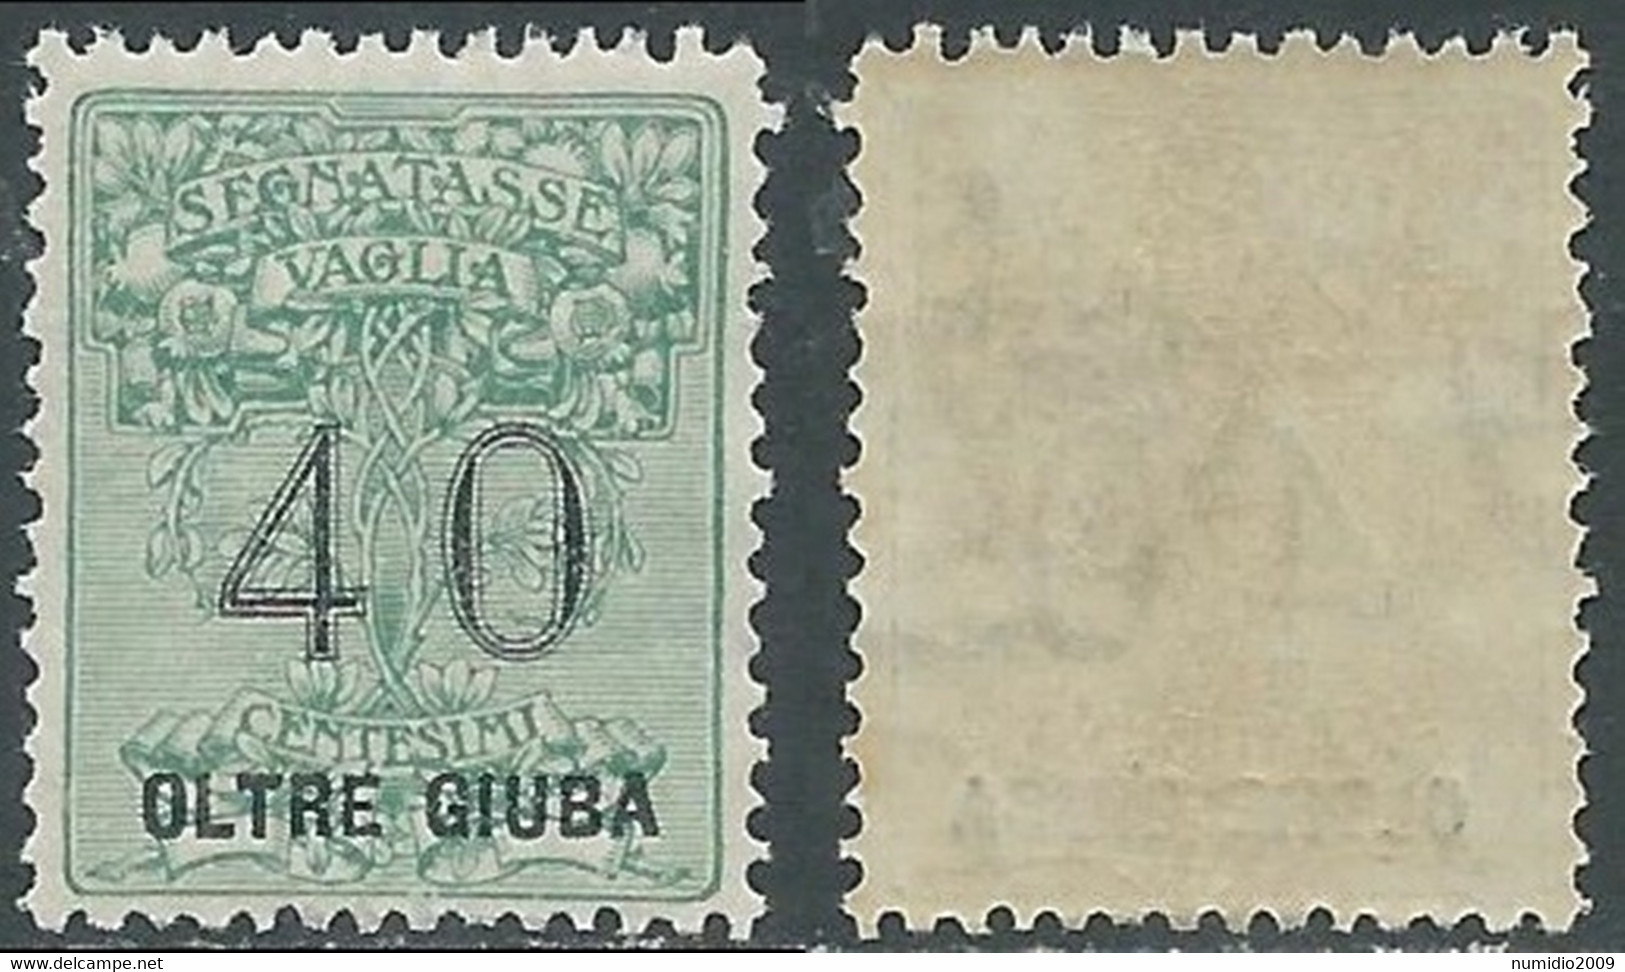 1925 OLTRE GIUBA SEGNATASSE PER VAGLIA 40 CENT MNH ** - E201 - Oltre Giuba